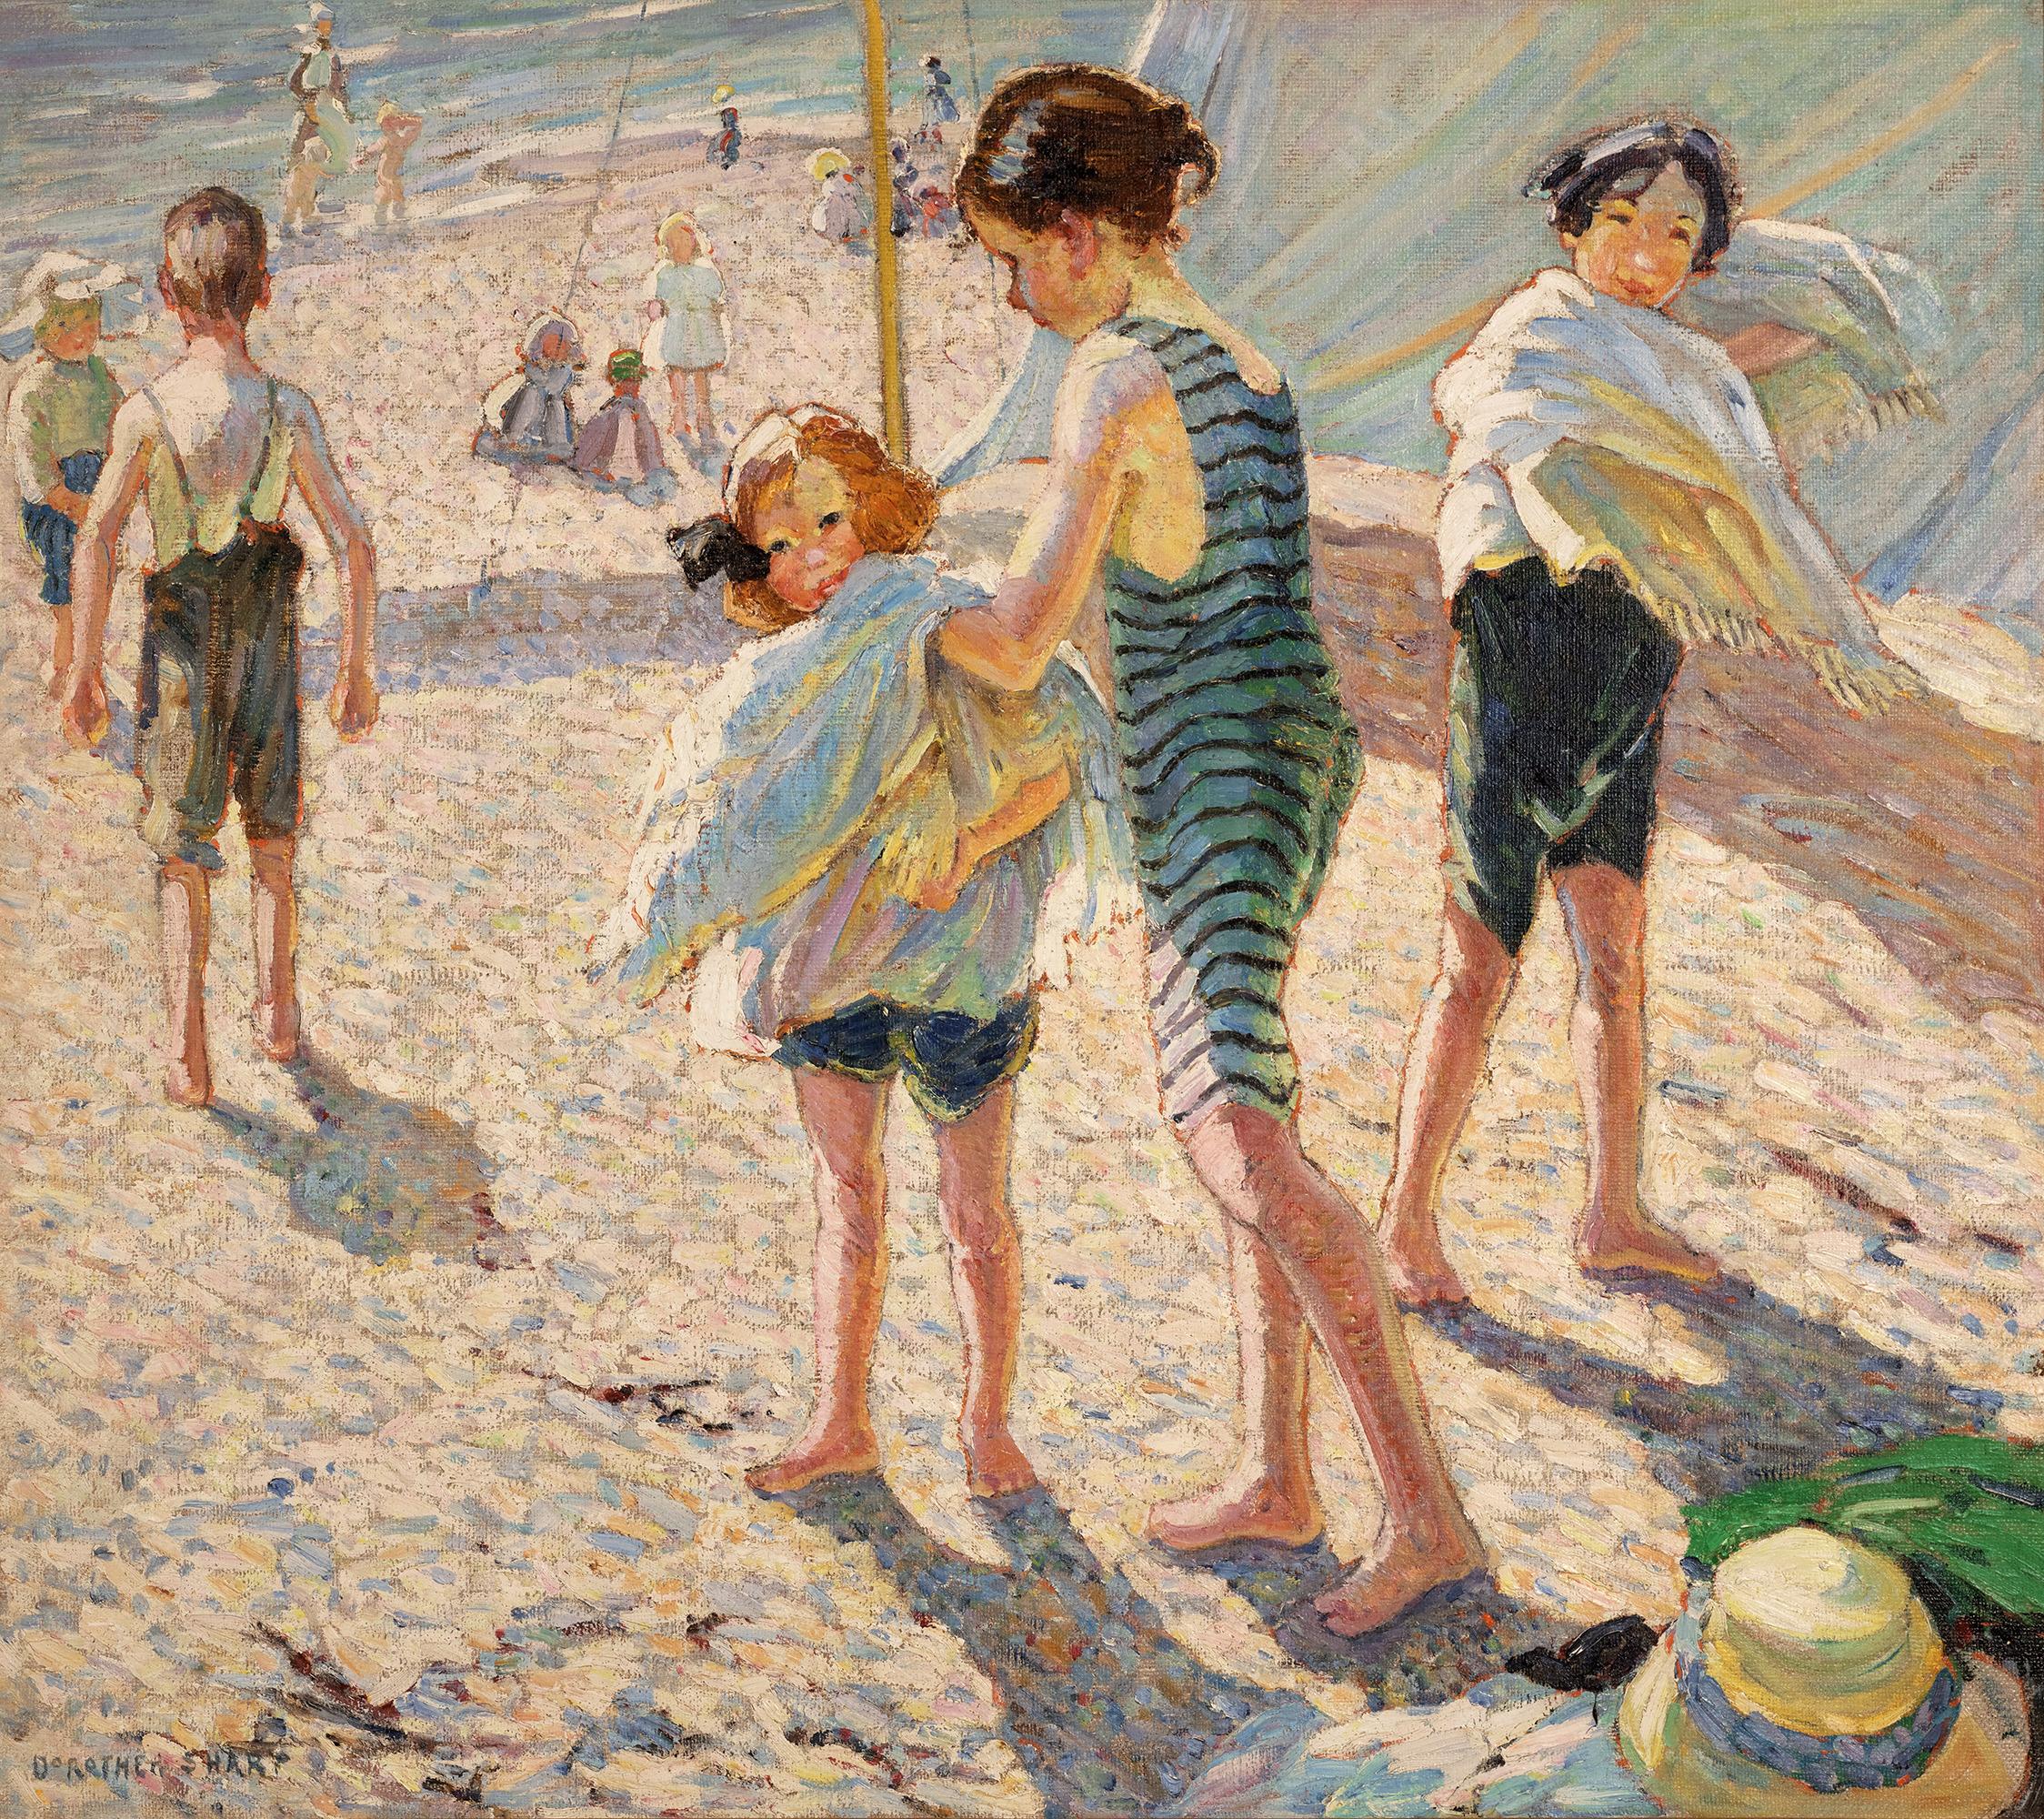 Dorothea Sharp
1874-1955  Britisch

Ein Tag am Strand

Signiert "Dorothea Sharp" (unten links)
Öl auf Leinwand

Die britische Malerin Dorothea Sharp fängt den fröhlichen Geist der Kindheit in dieser bezaubernden Küstenszene ein. Das Werk mit dem